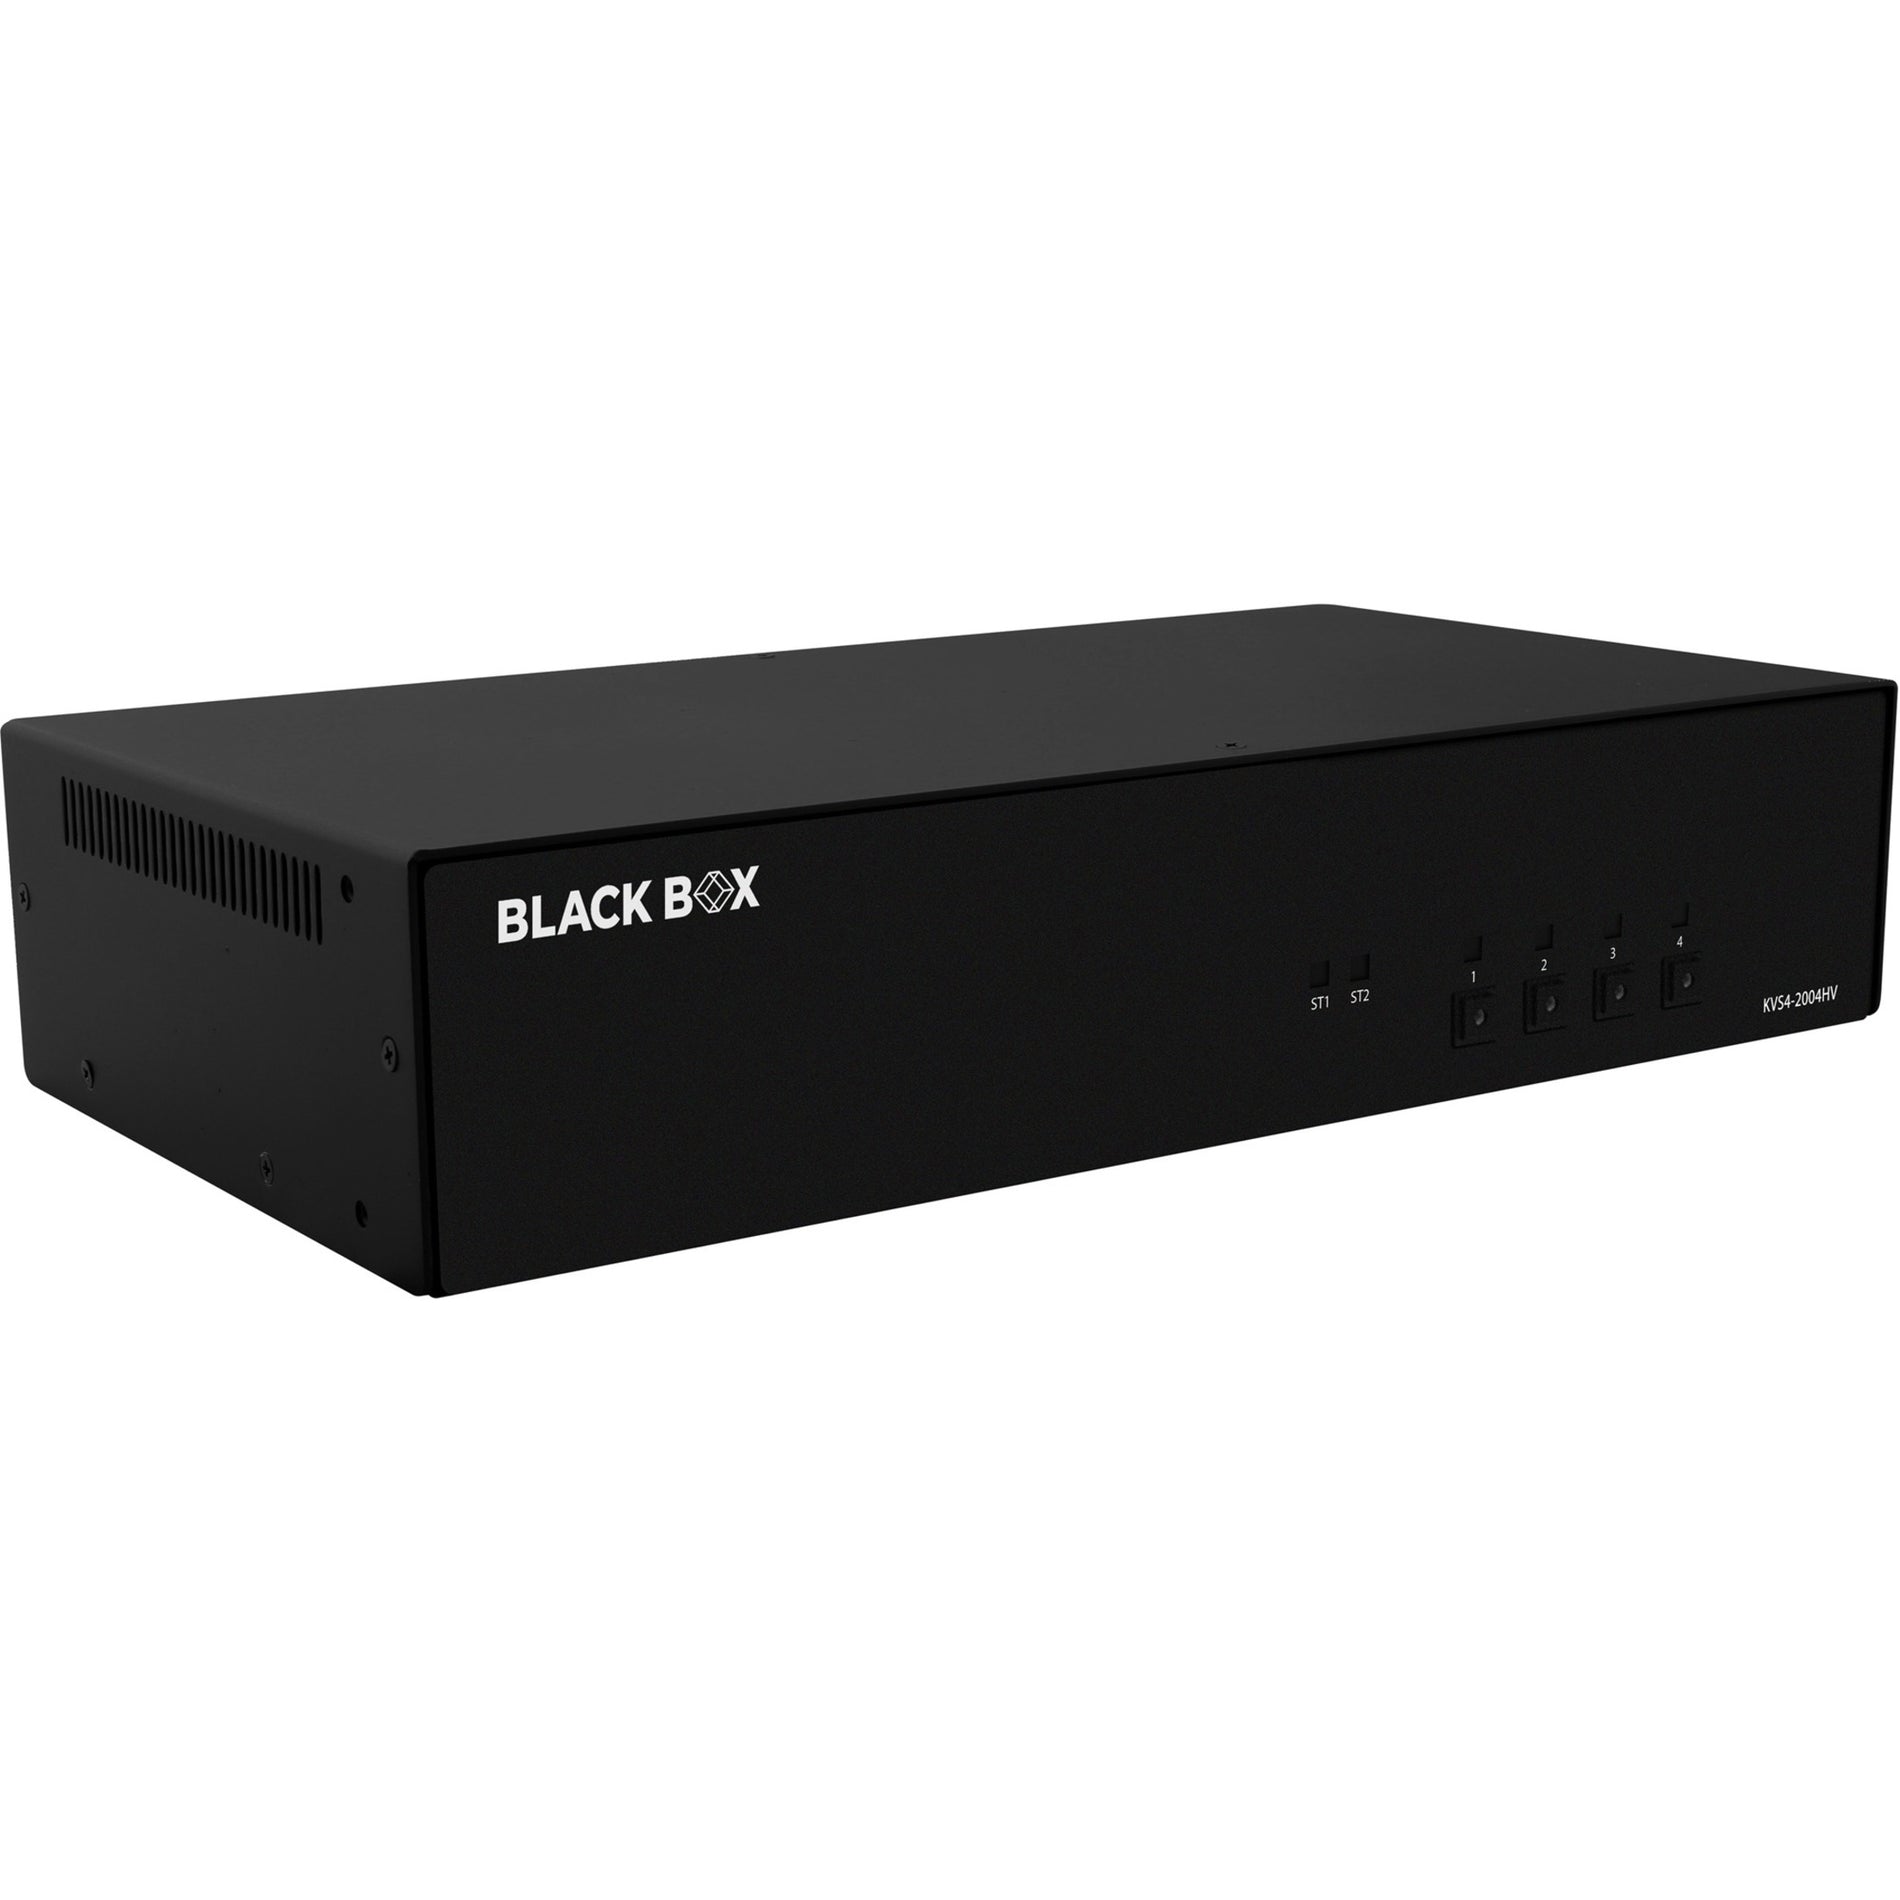 Black Box KVS4-2004HV Secure KVM Switch - FlexPort HDMI/DisplayPort 3840 x 2160 1 Year Warranty TAA Compliant USB 6 USB Ports